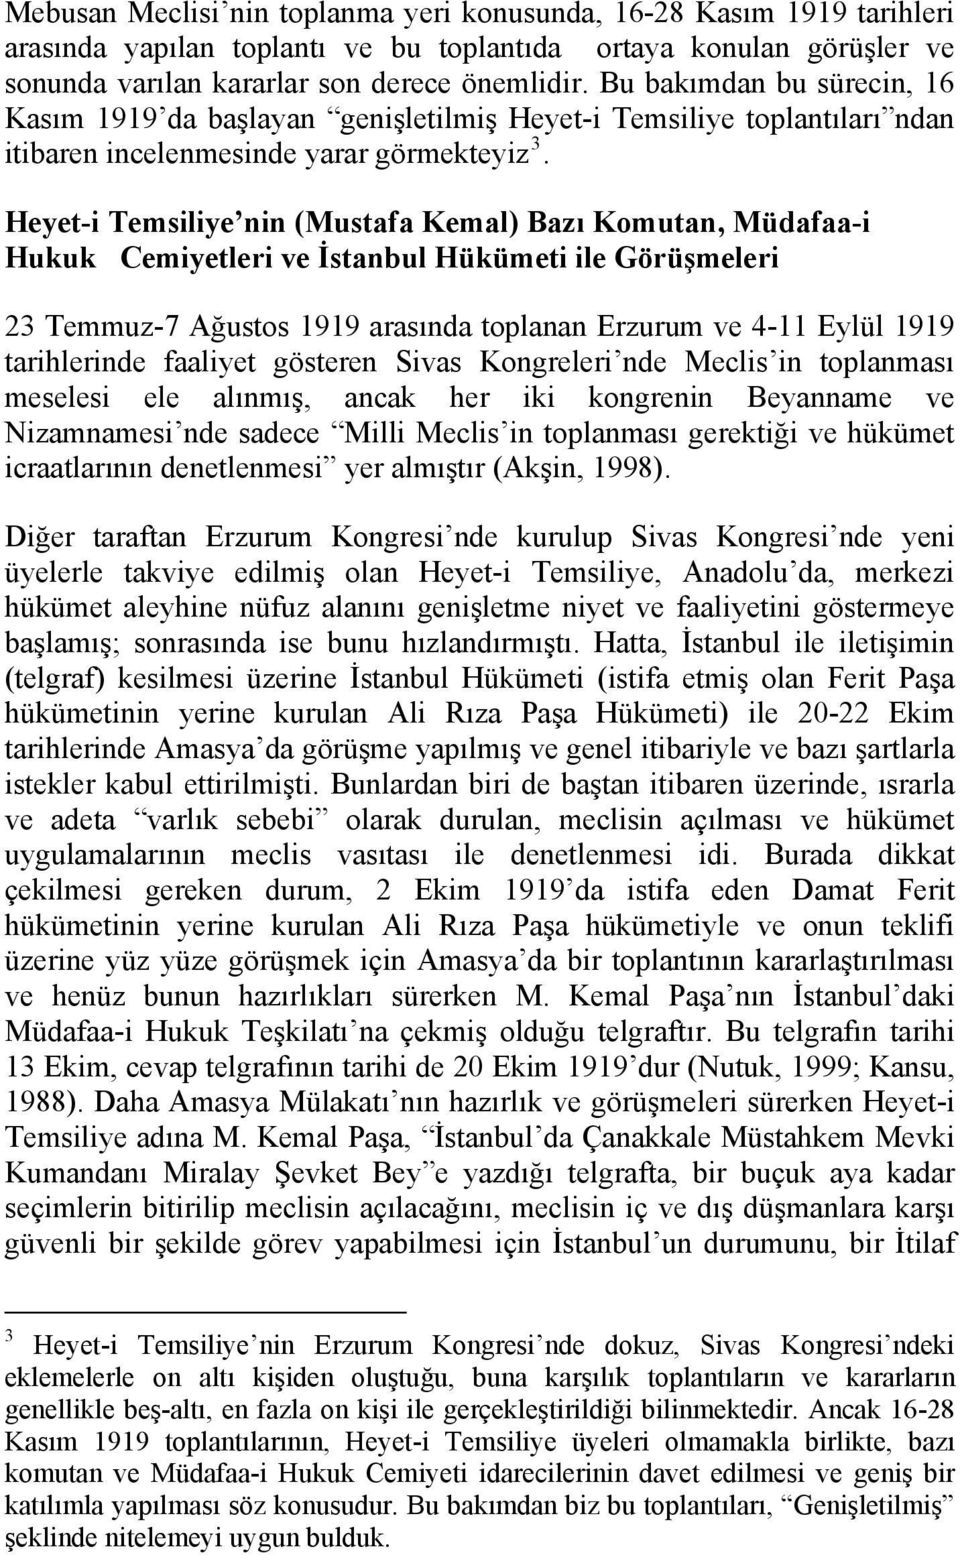 Heyet-i Temsiliye nin (Mustafa Kemal) Bazı Komutan, Müdafaa-i Hukuk Cemiyetleri ve İstanbul Hükümeti ile Görüşmeleri 23 Temmuz-7 Ağustos 1919 arasında toplanan Erzurum ve 4-11 Eylül 1919 tarihlerinde